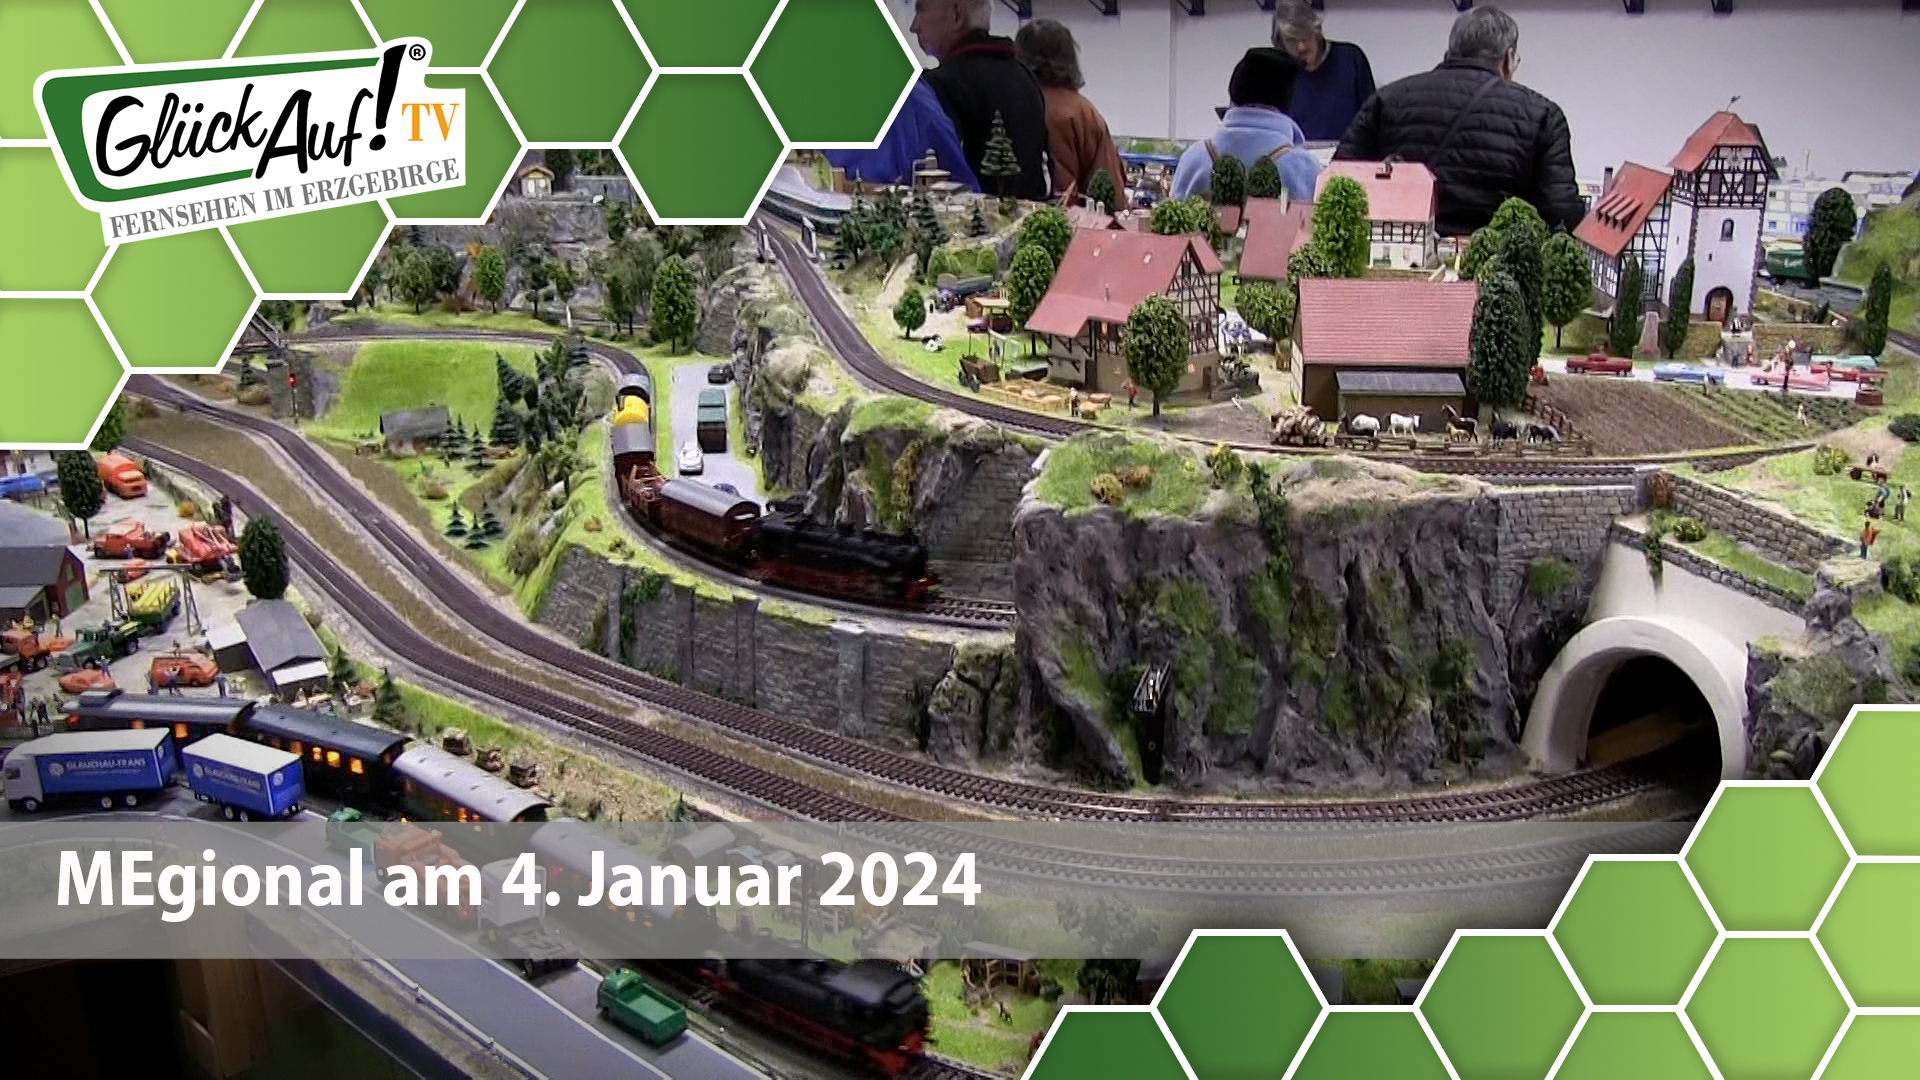 MEgional am 4. Januar 2024 mit einer Modellbahnausstellung